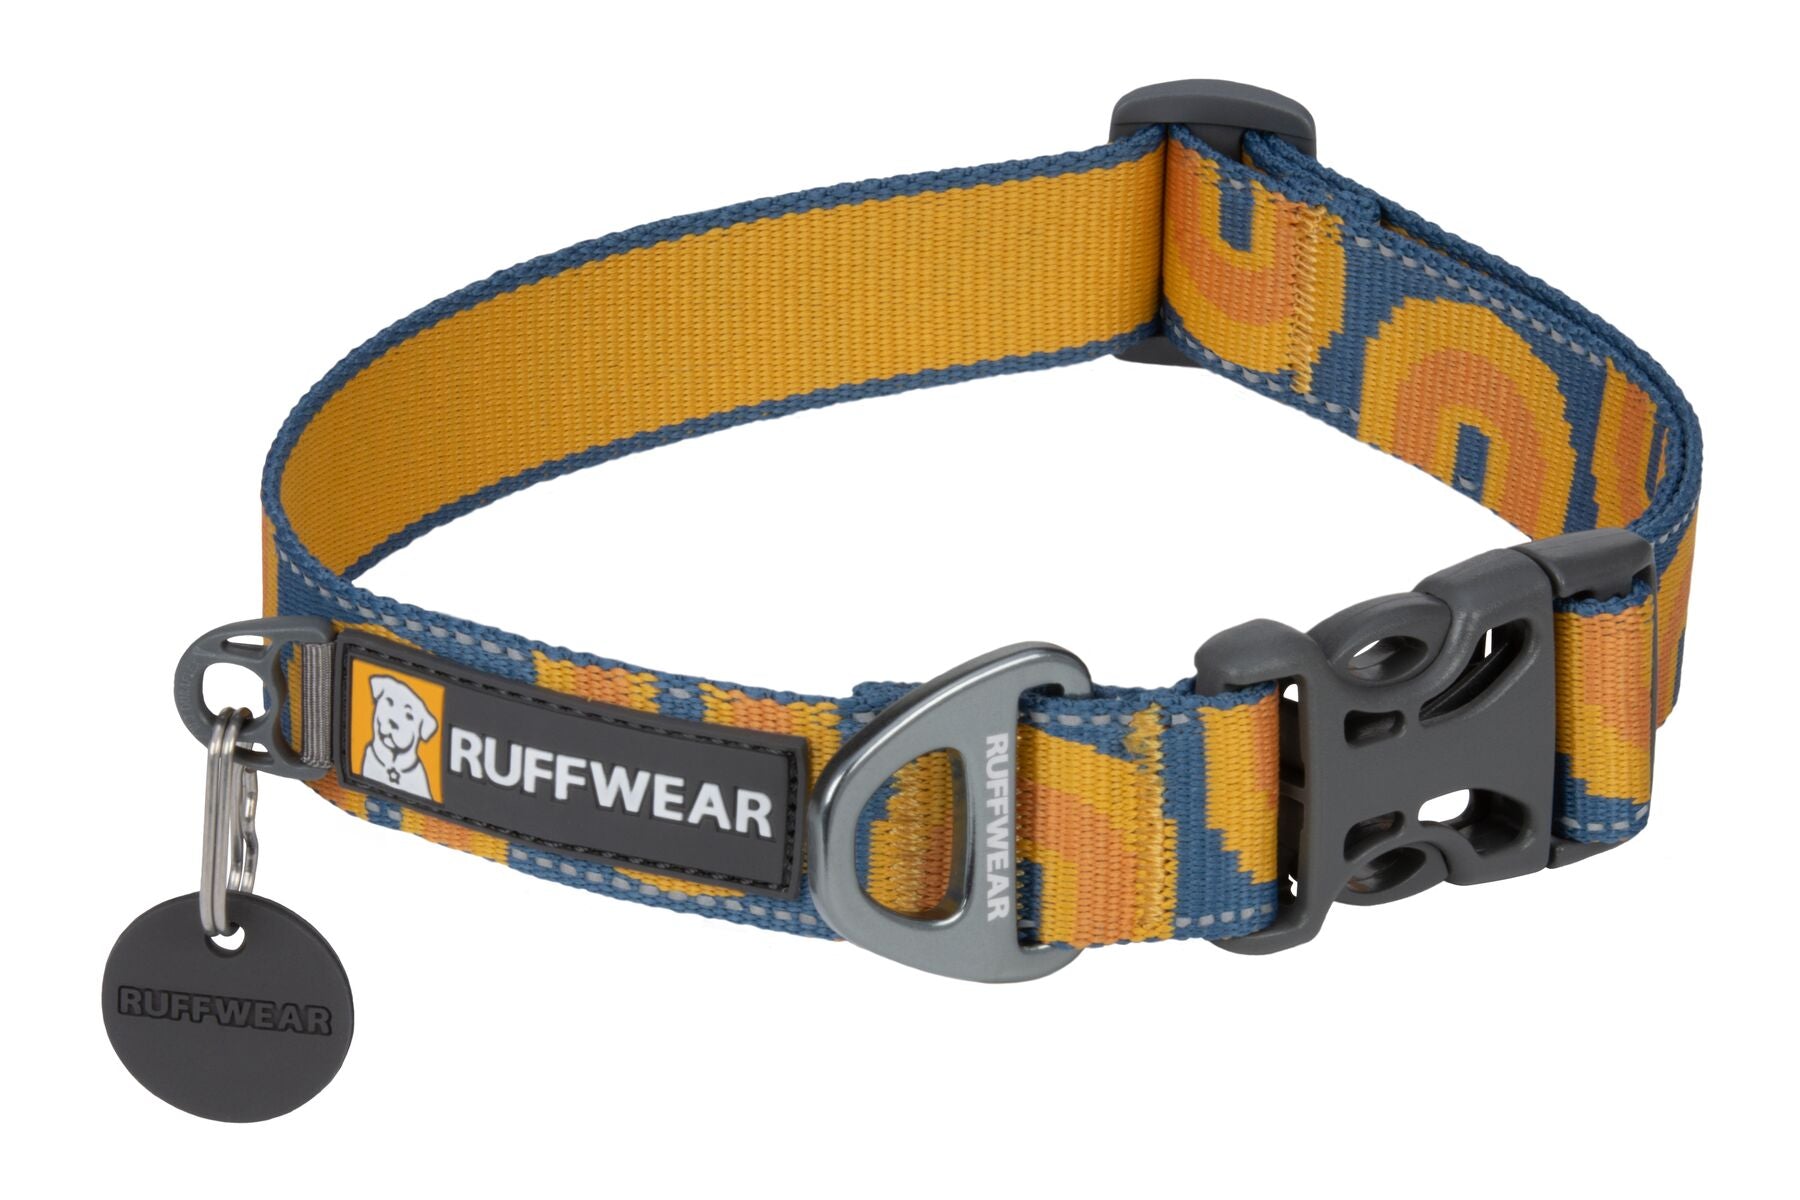 Collar para Perros Reflejante Modelo Crag Collar® Canyon Oxbow - Ruffwear